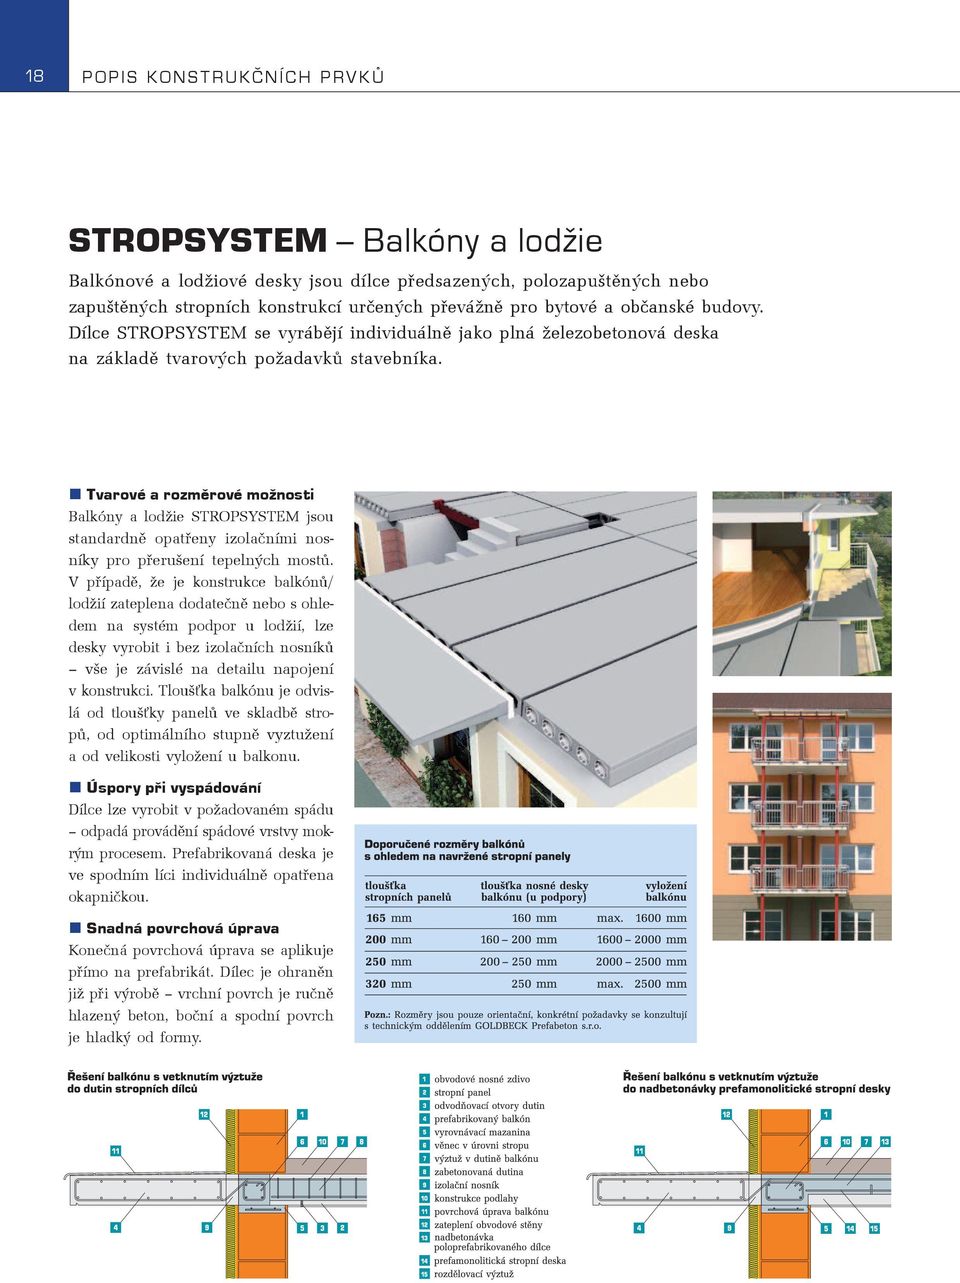 Tvarové a rozmìrové možnosti Balkóny a lodžie STROPSYSTEM jsou standardnì opatøeny izolaèními nosníky pro pøerušení tepelných mostù.